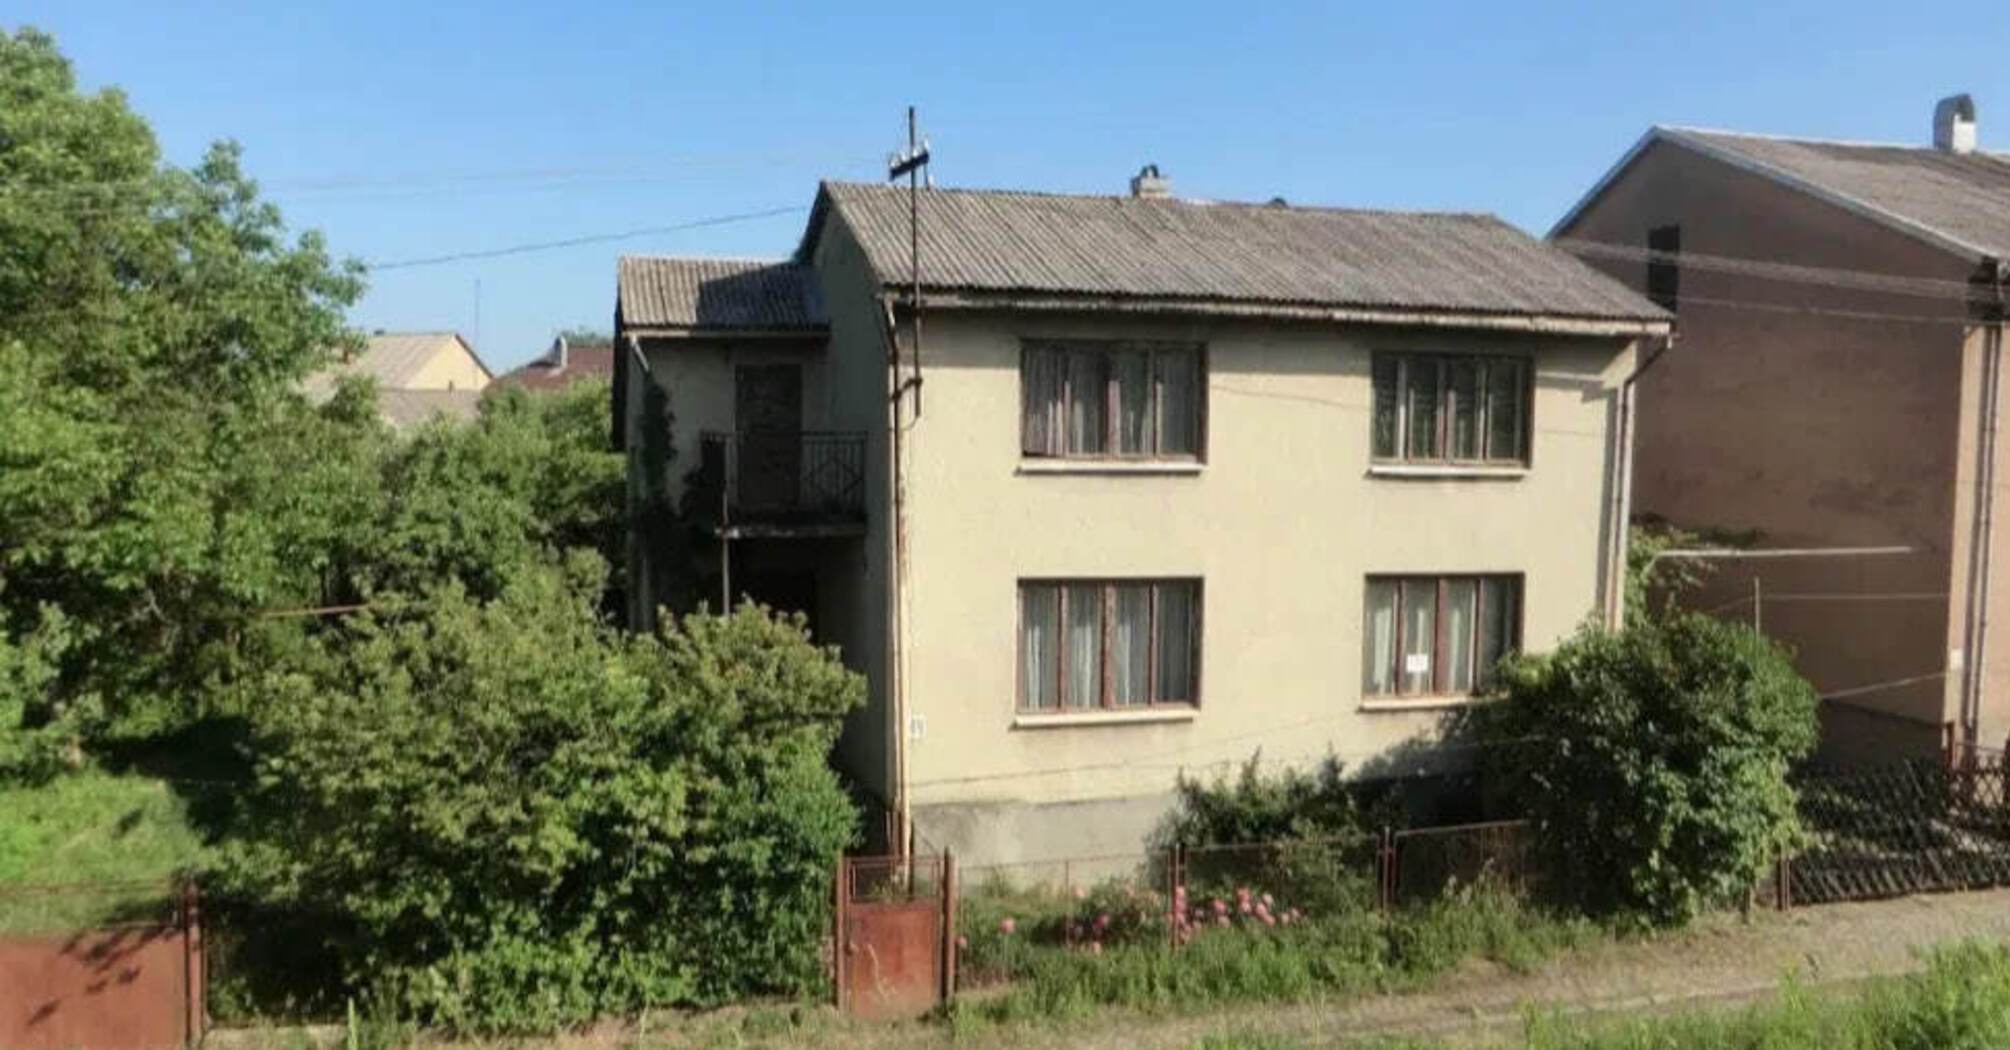 Dom na sprzedaż na Zakarpaciu w pobliżu rzeki Cisy na granicy z Rumunią